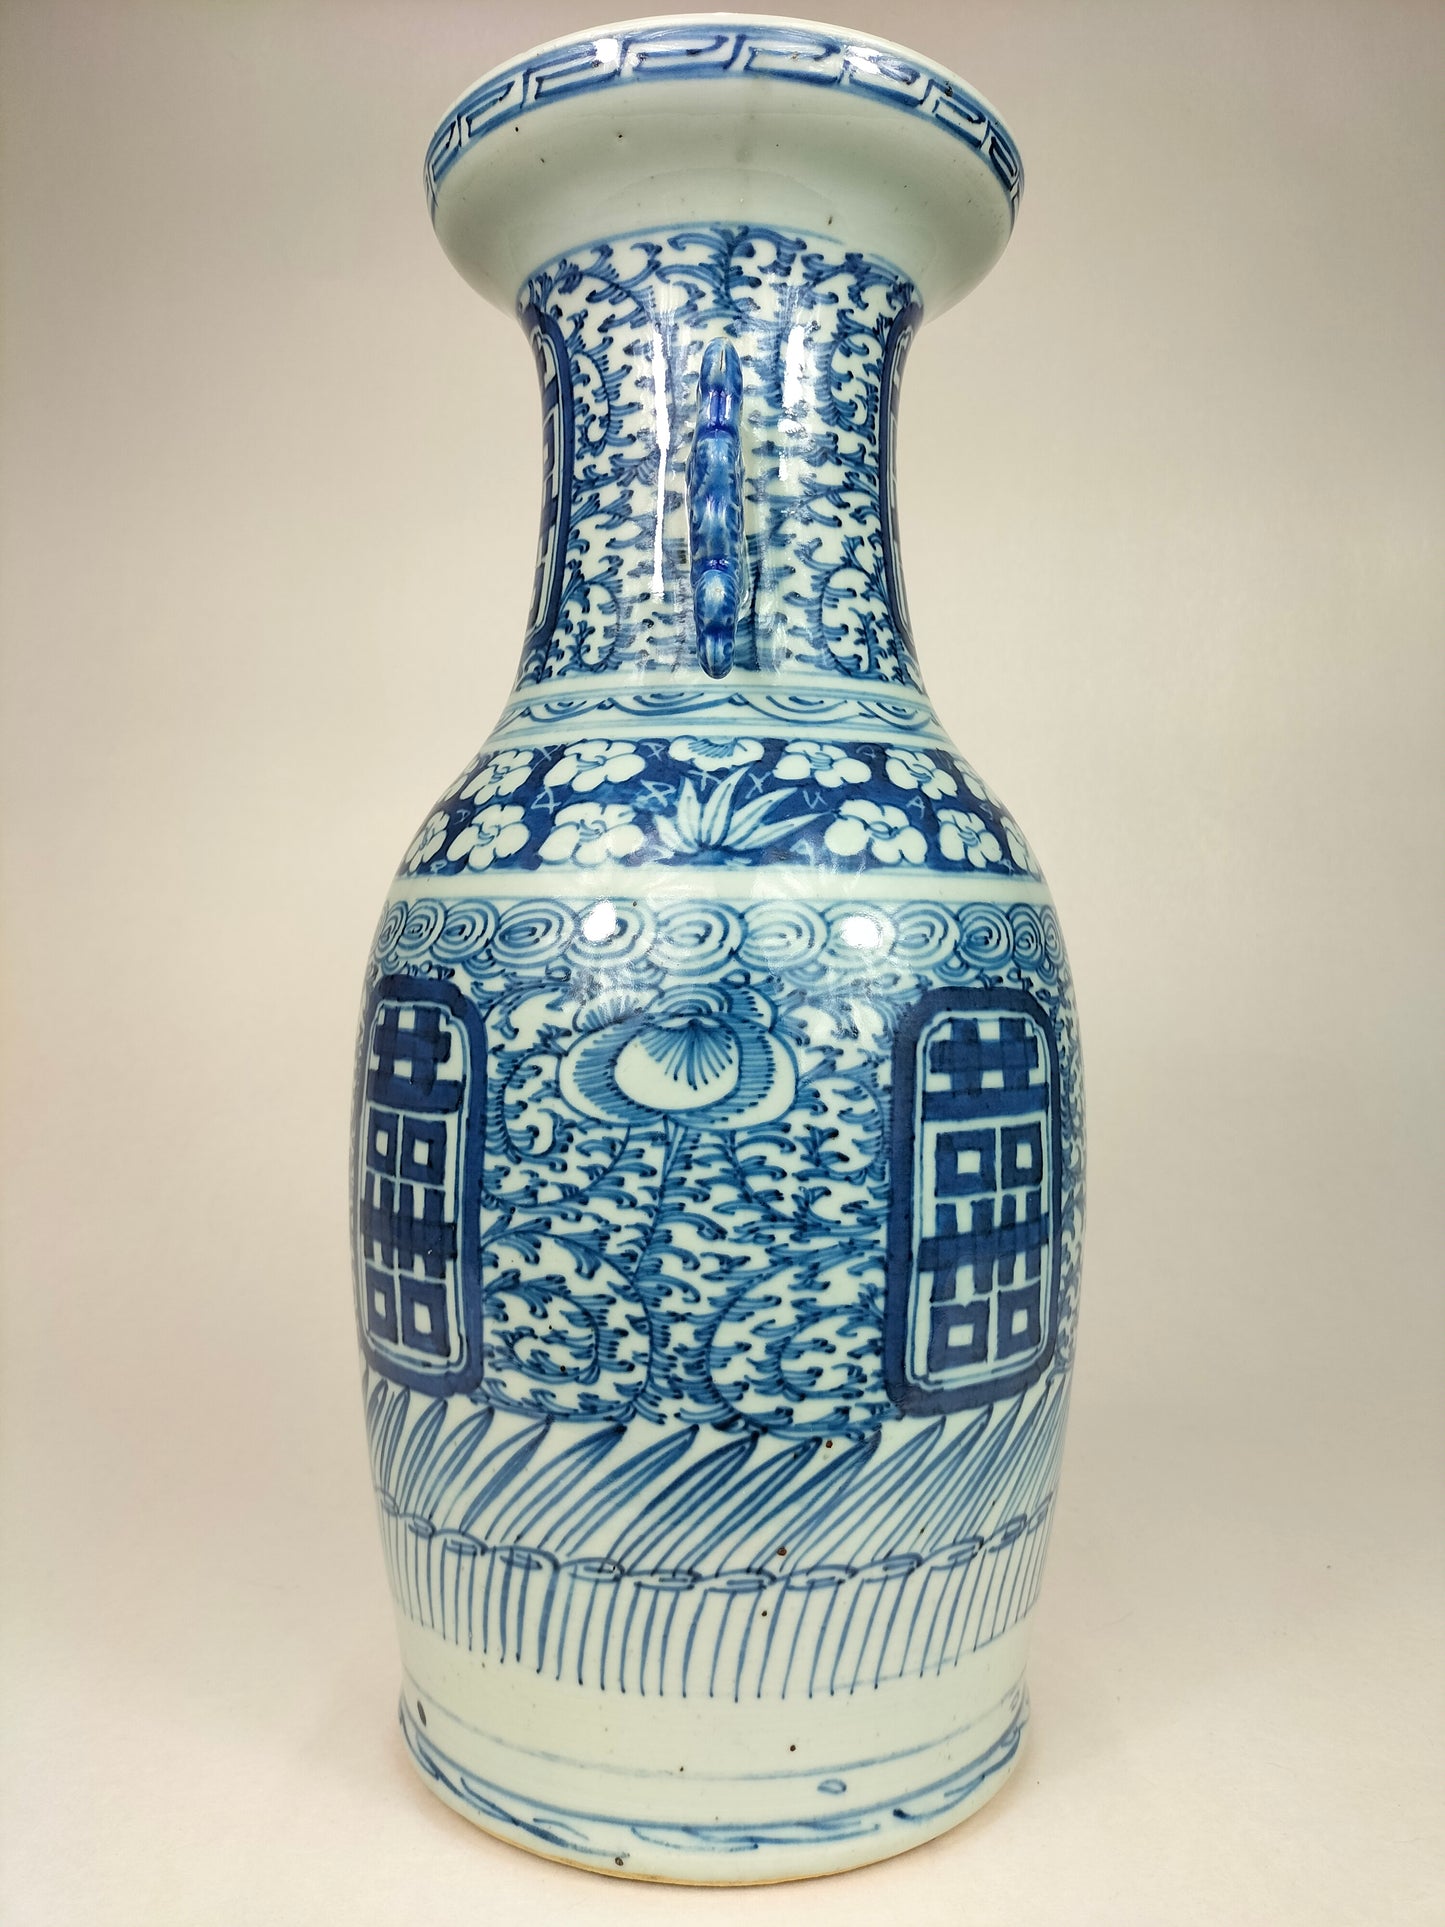 مزهرية سعادة مزدوجة صينية قديمة // أزرق وأبيض – أسرة تشينغ – القرن التاسع عشر